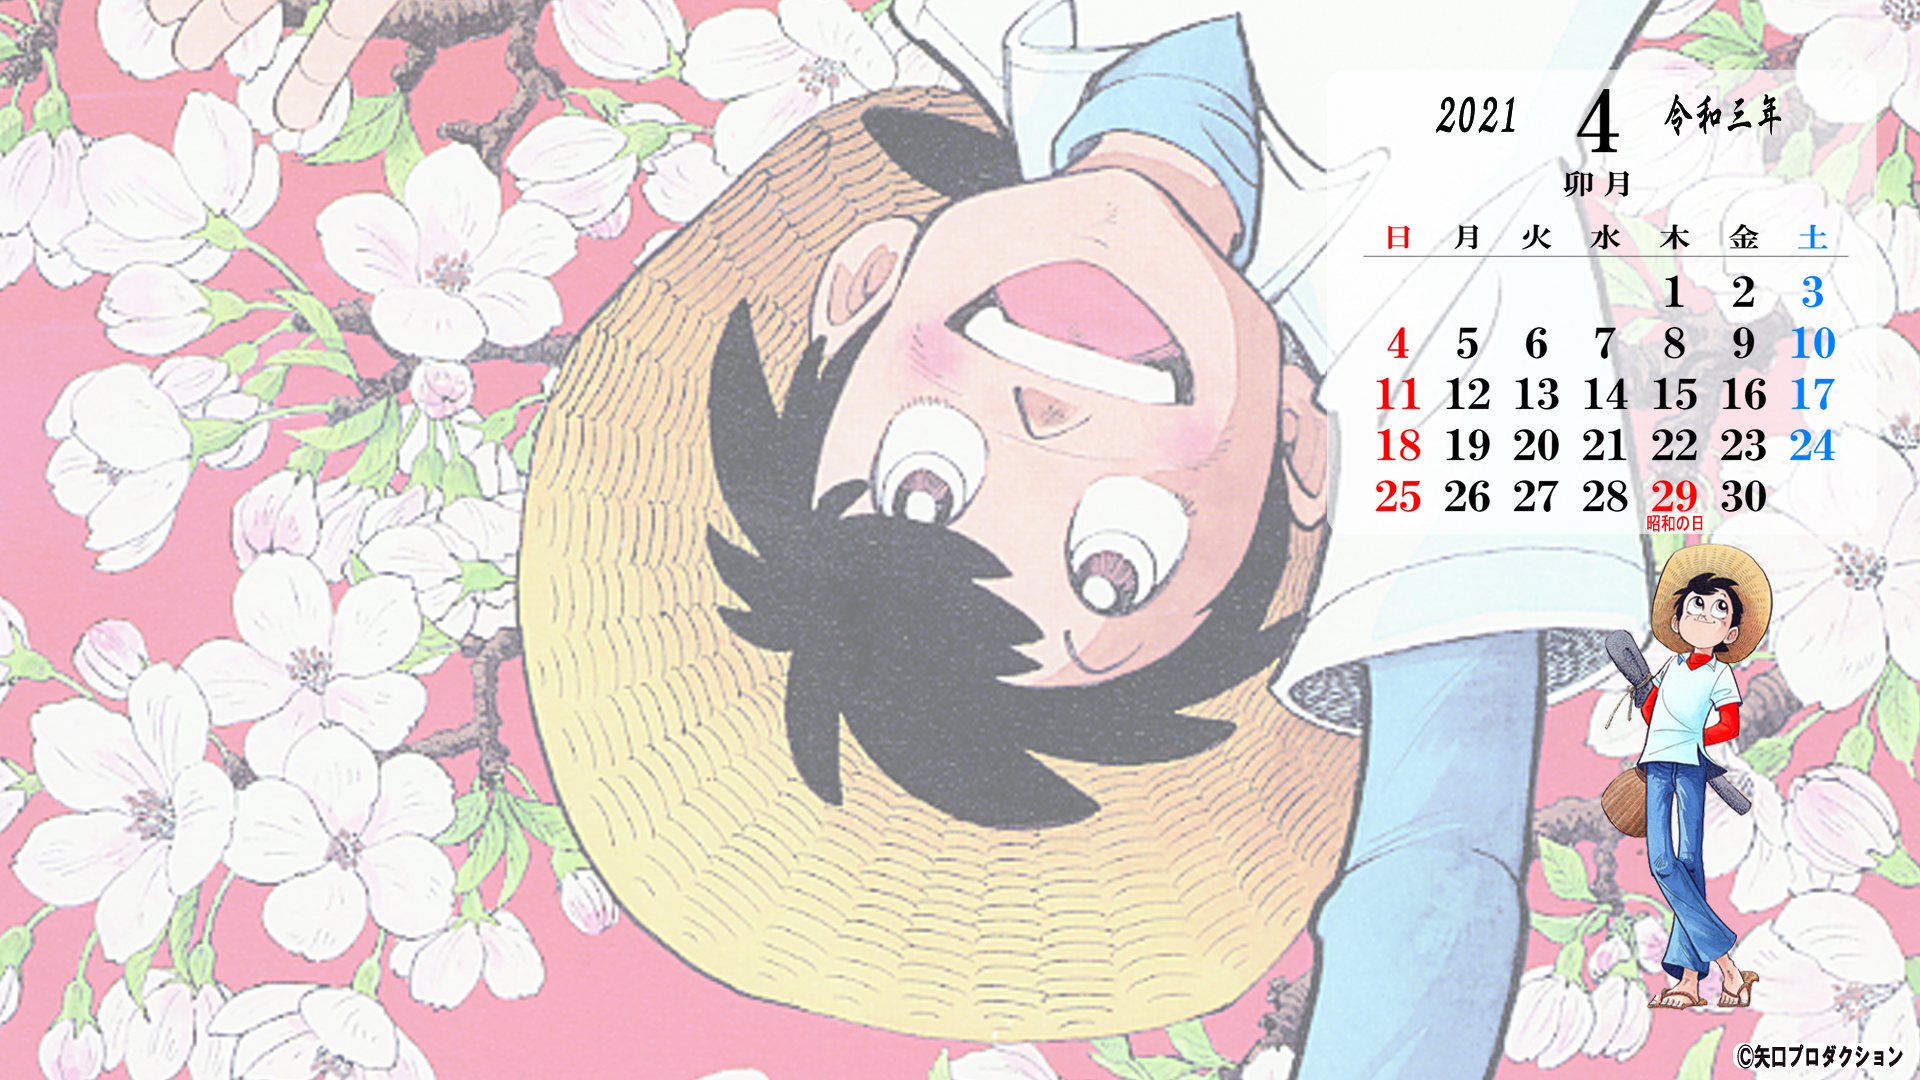 4月のスマホ Pc カレンダー壁紙プレゼント 矢口高雄 公式ホームページ